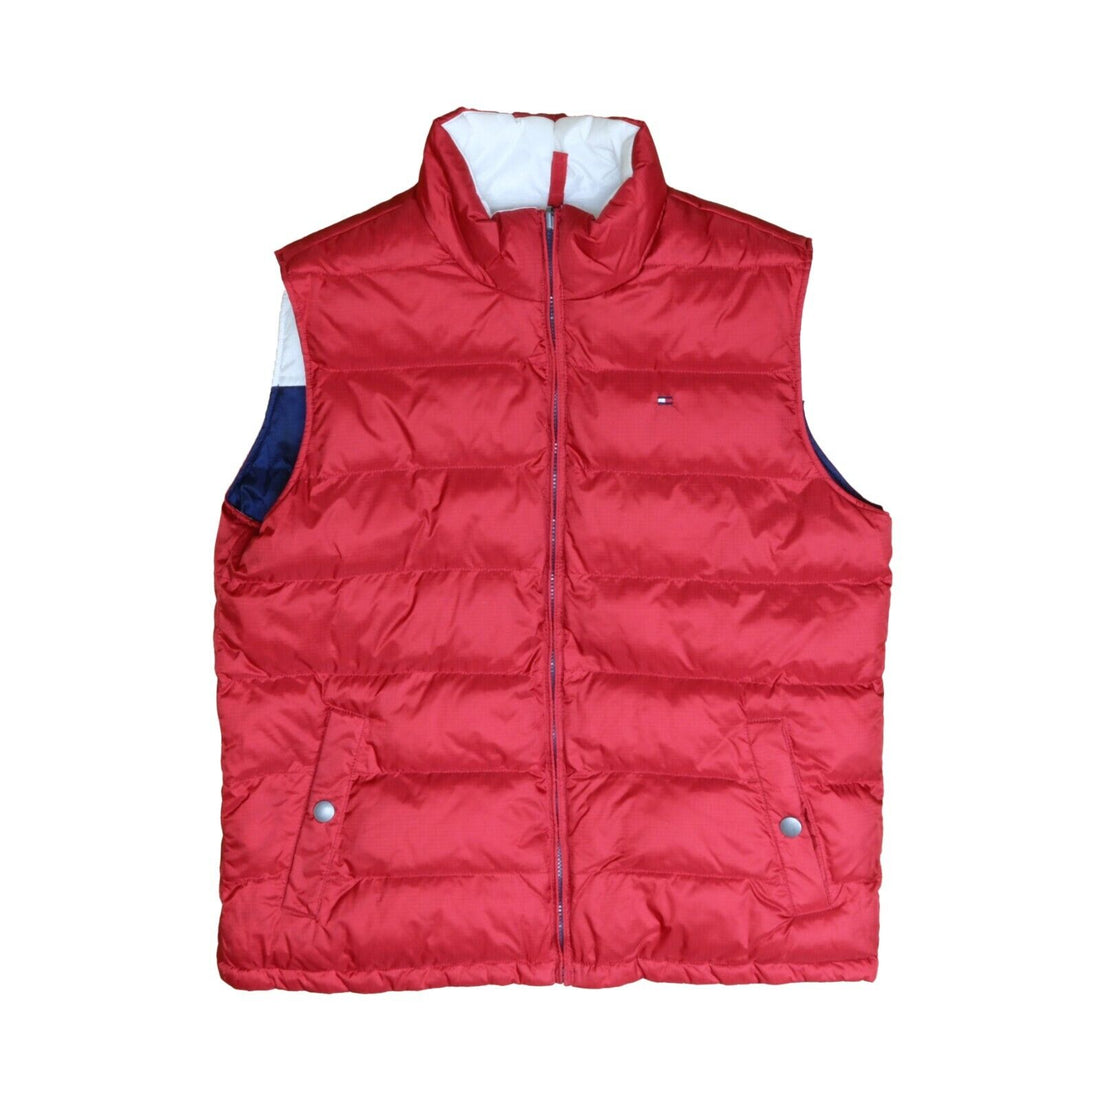 Vintage Tommy Hilfiger Reversible Puffer Vest Jacket Size Large Red Blue